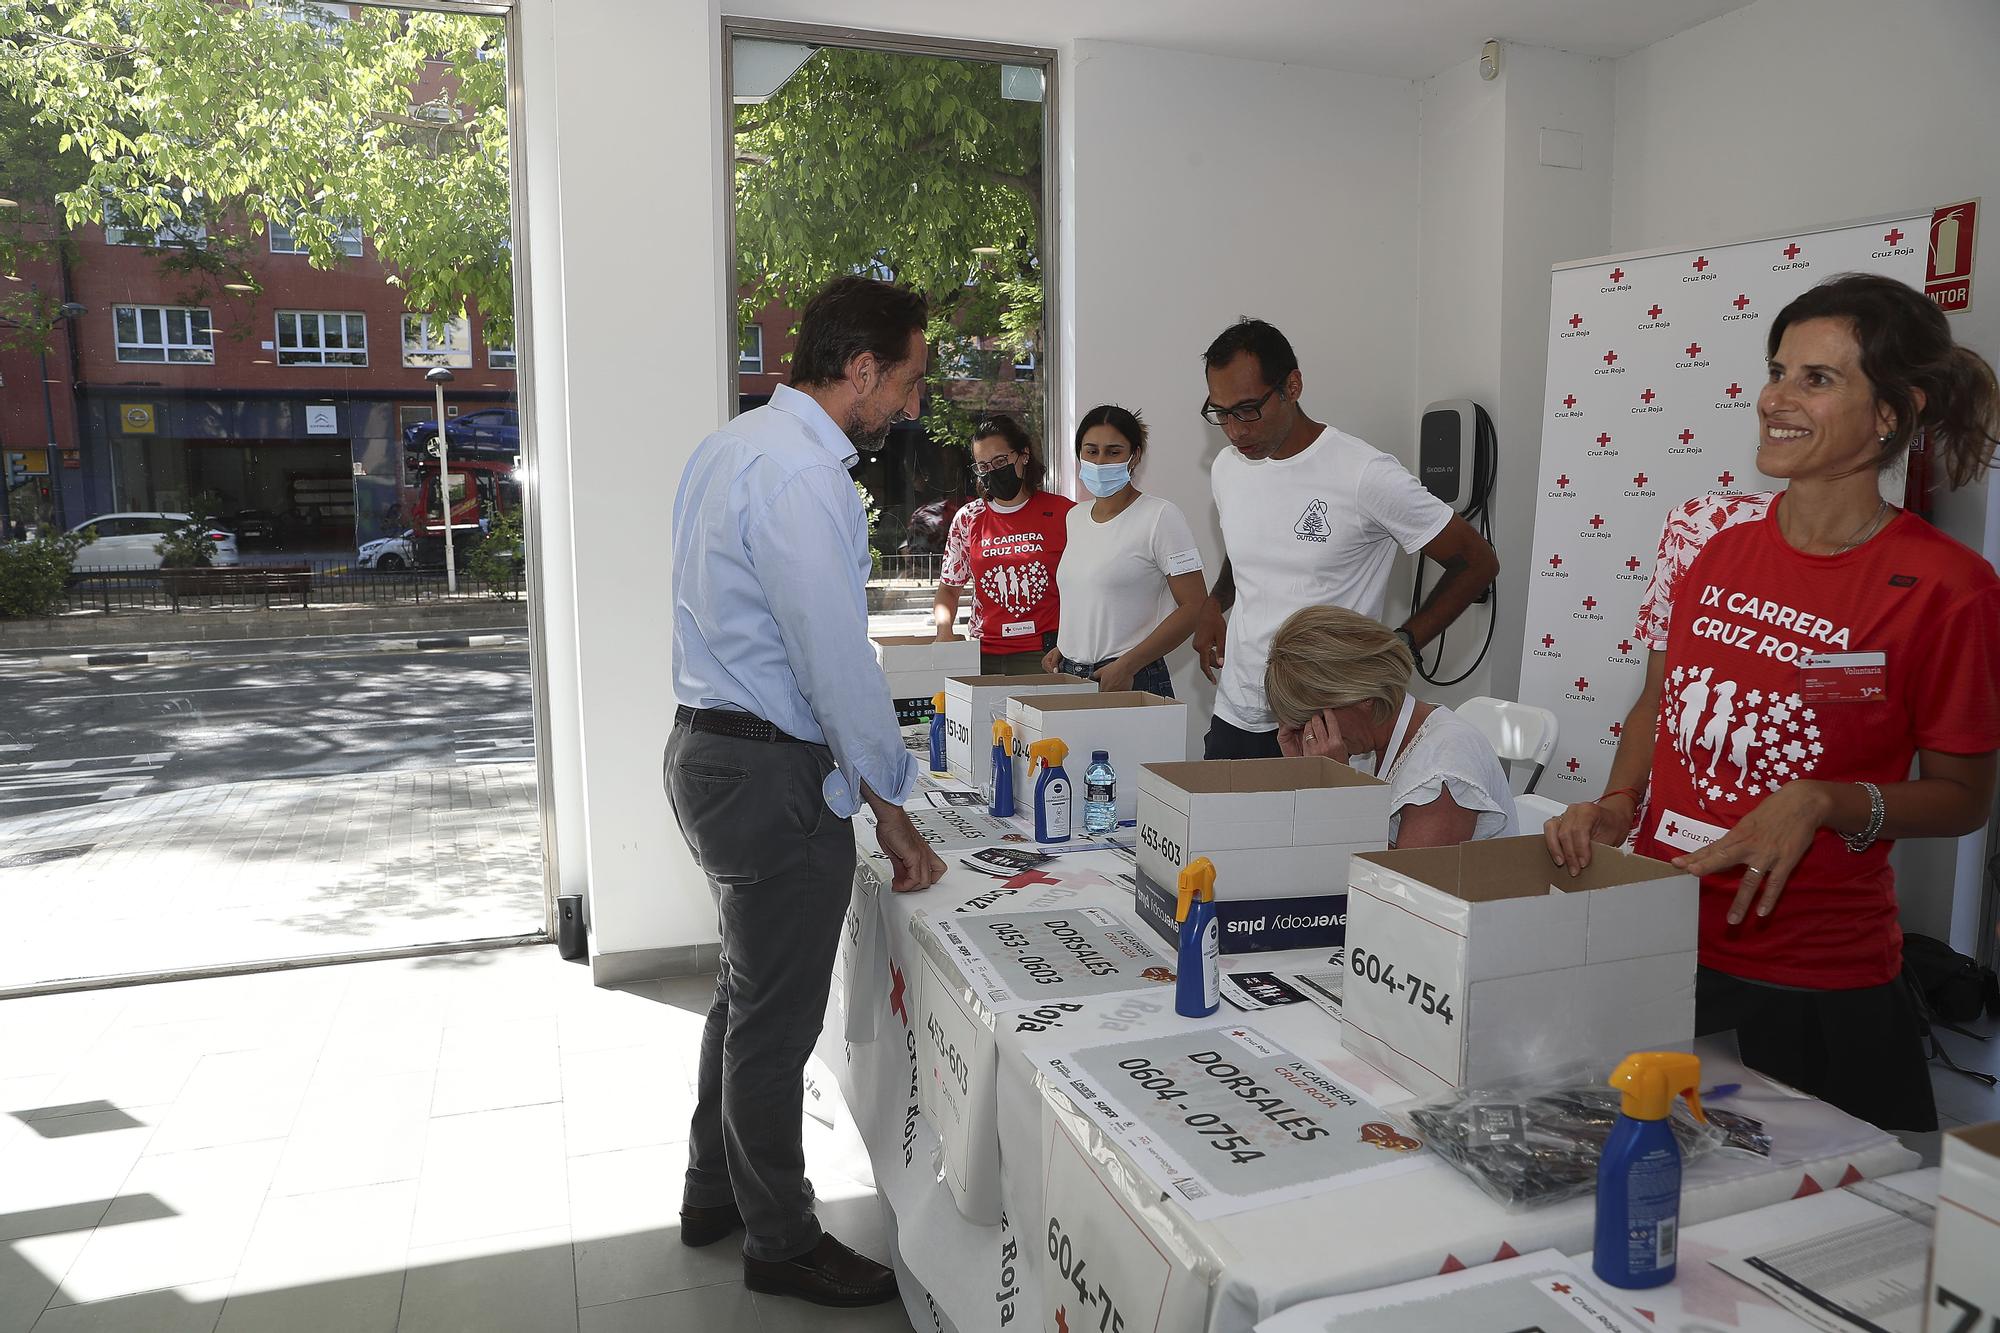 Abre la Feria del Corredor de la 9ª Carrera Cruz Roja